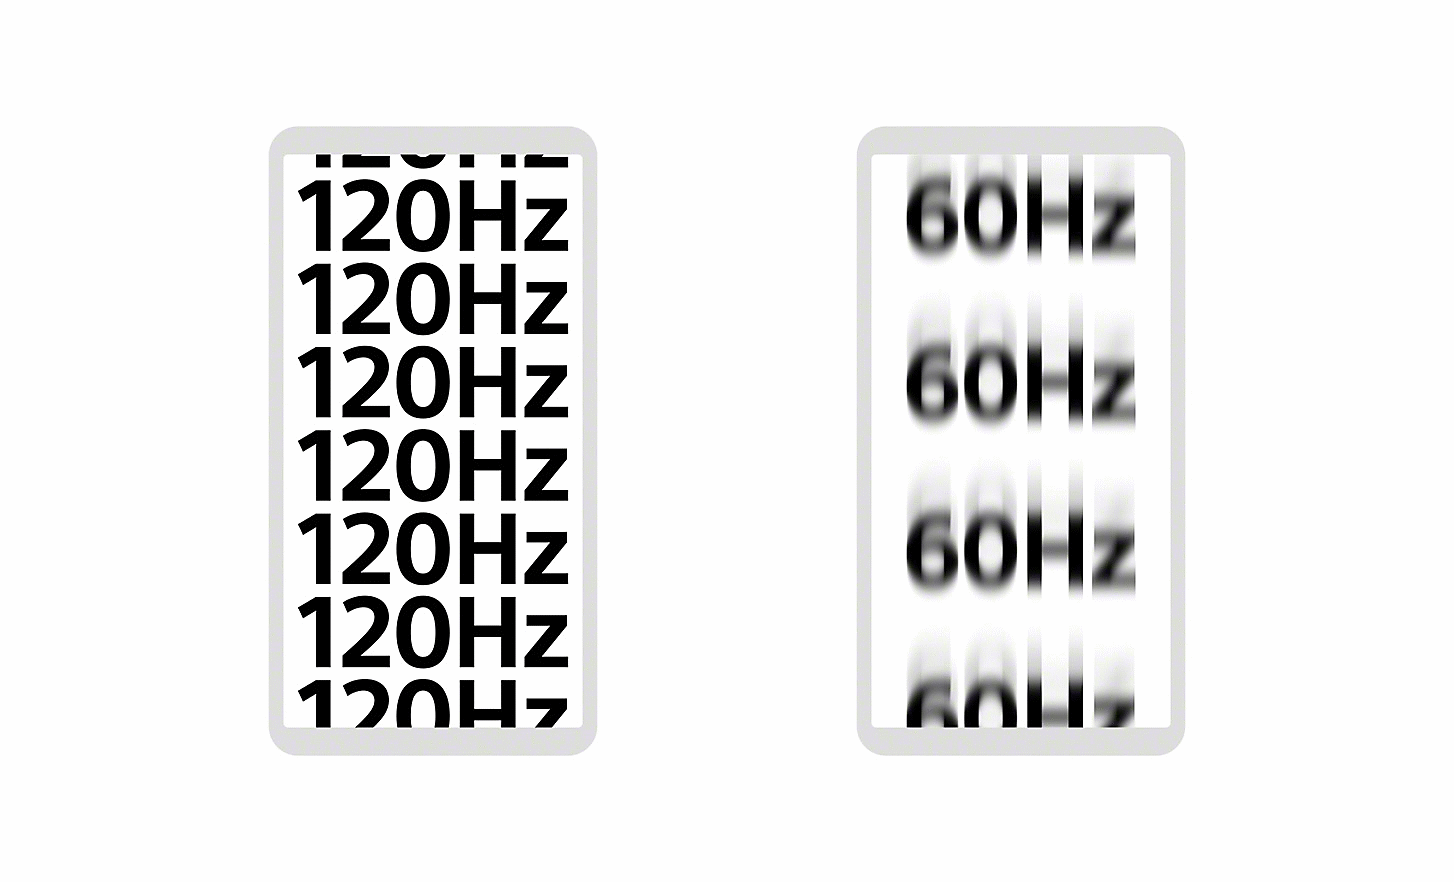 Deux boîtes côte-à-côte, celle de gauche affichant plusieurs répétitions nettes de 120 Hz et celle de droite quatre répétions floues de 60 Hz